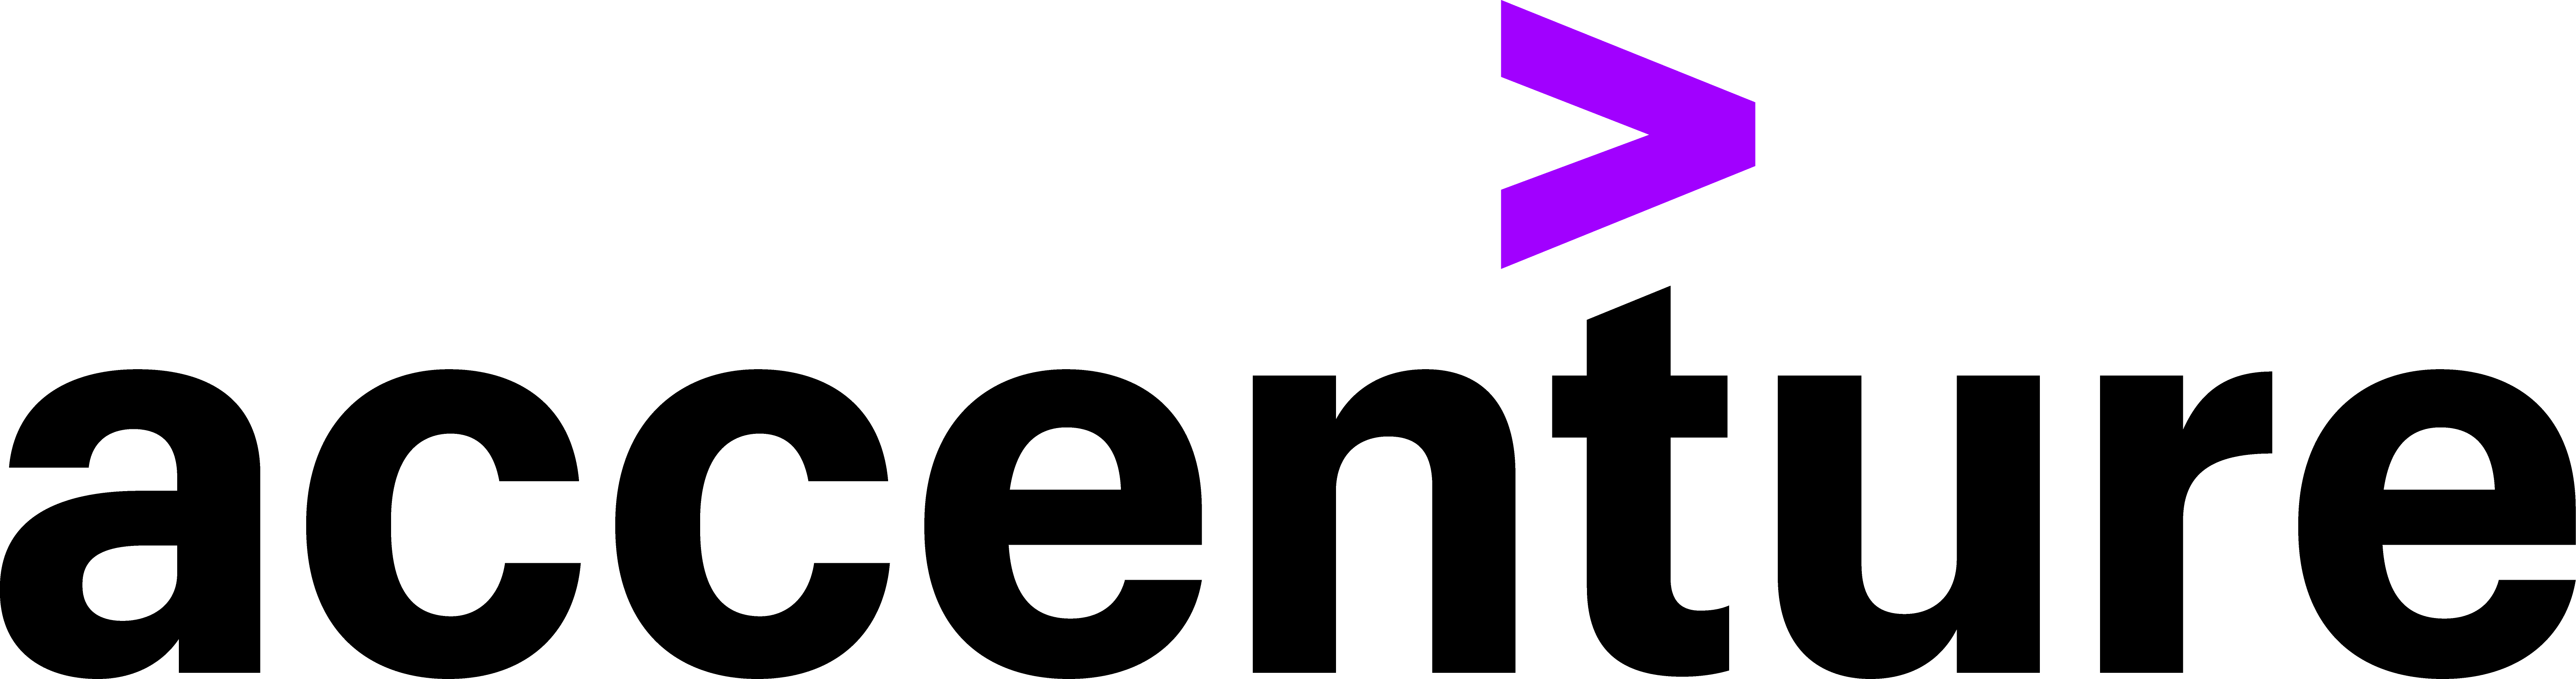 2. Accenture Logo